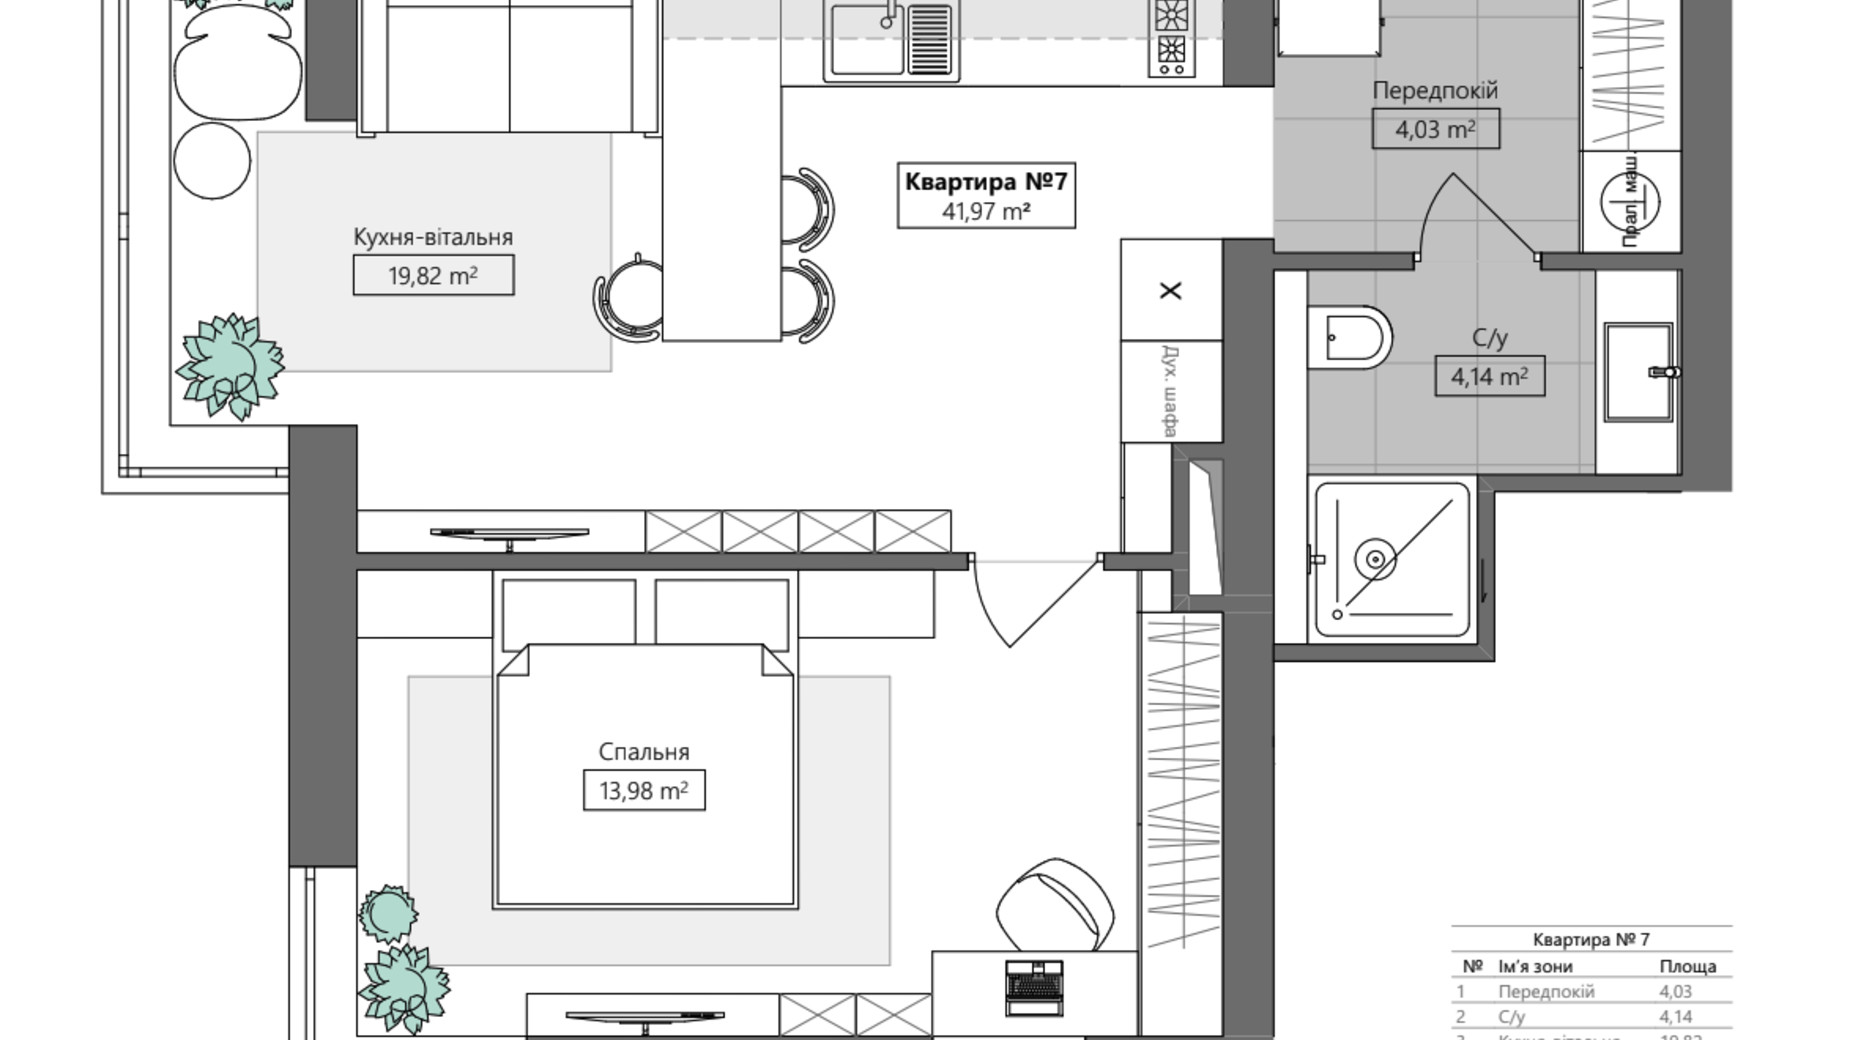 Планировка 1-комнатной квартиры в ЖК Q.Side 41.97 м², фото 673074